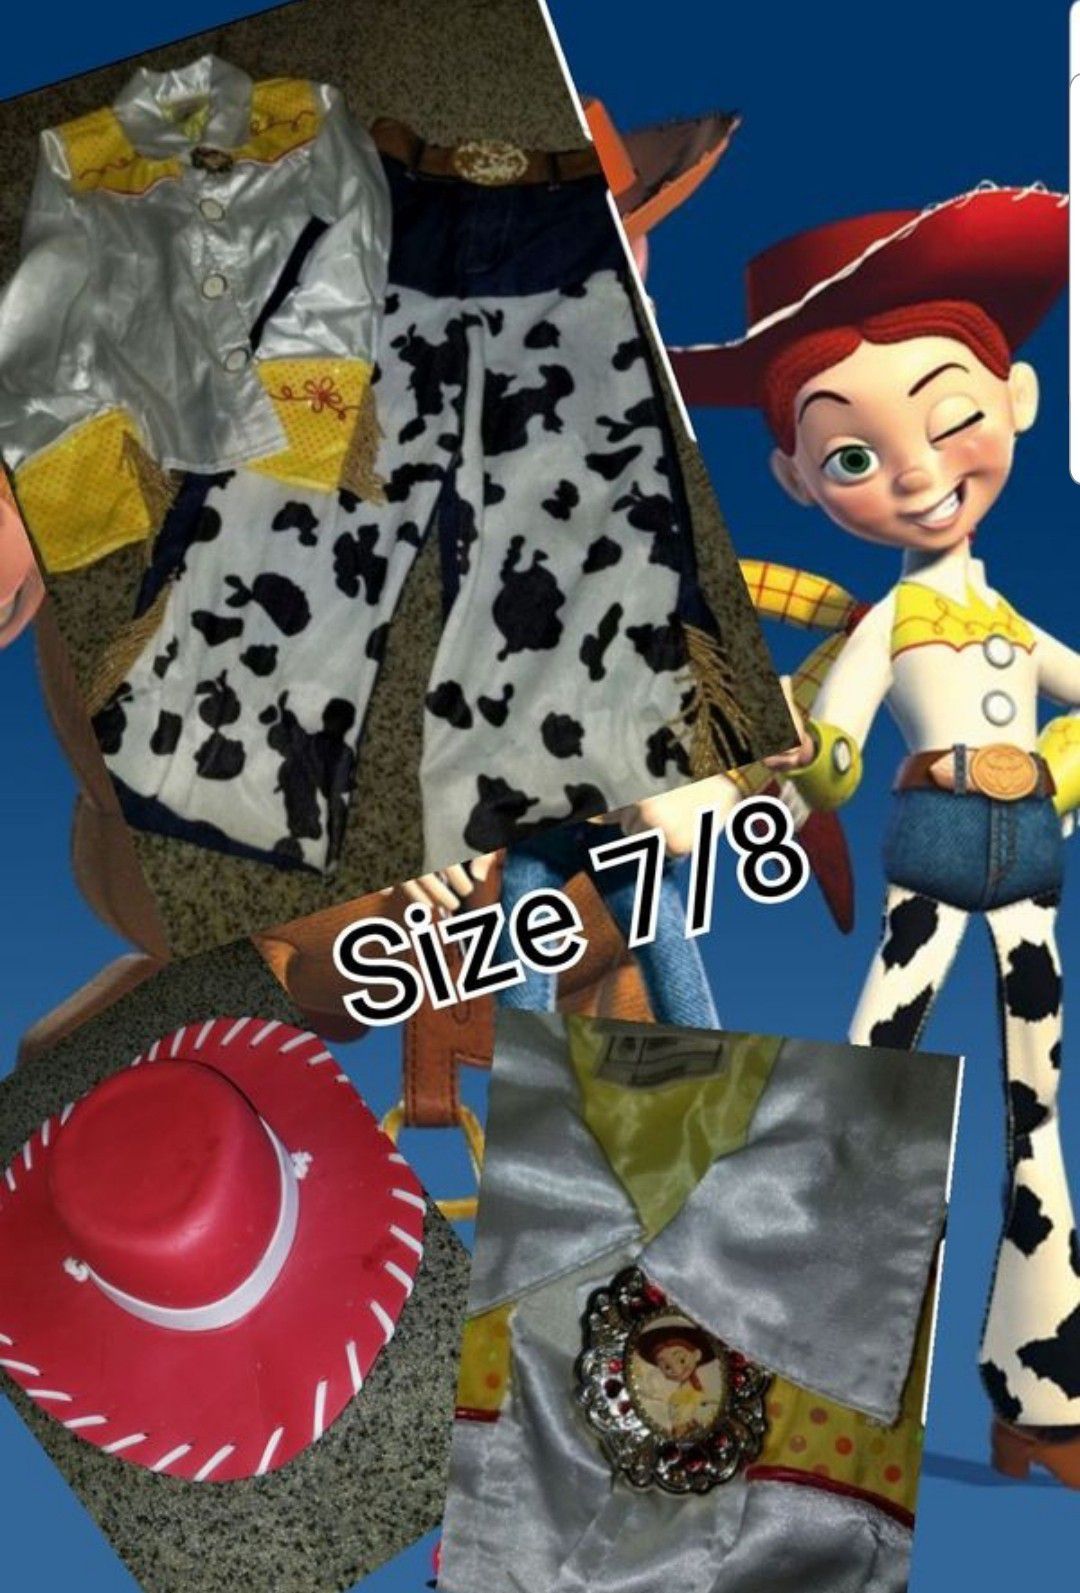 Toy story Jessie size 7/8